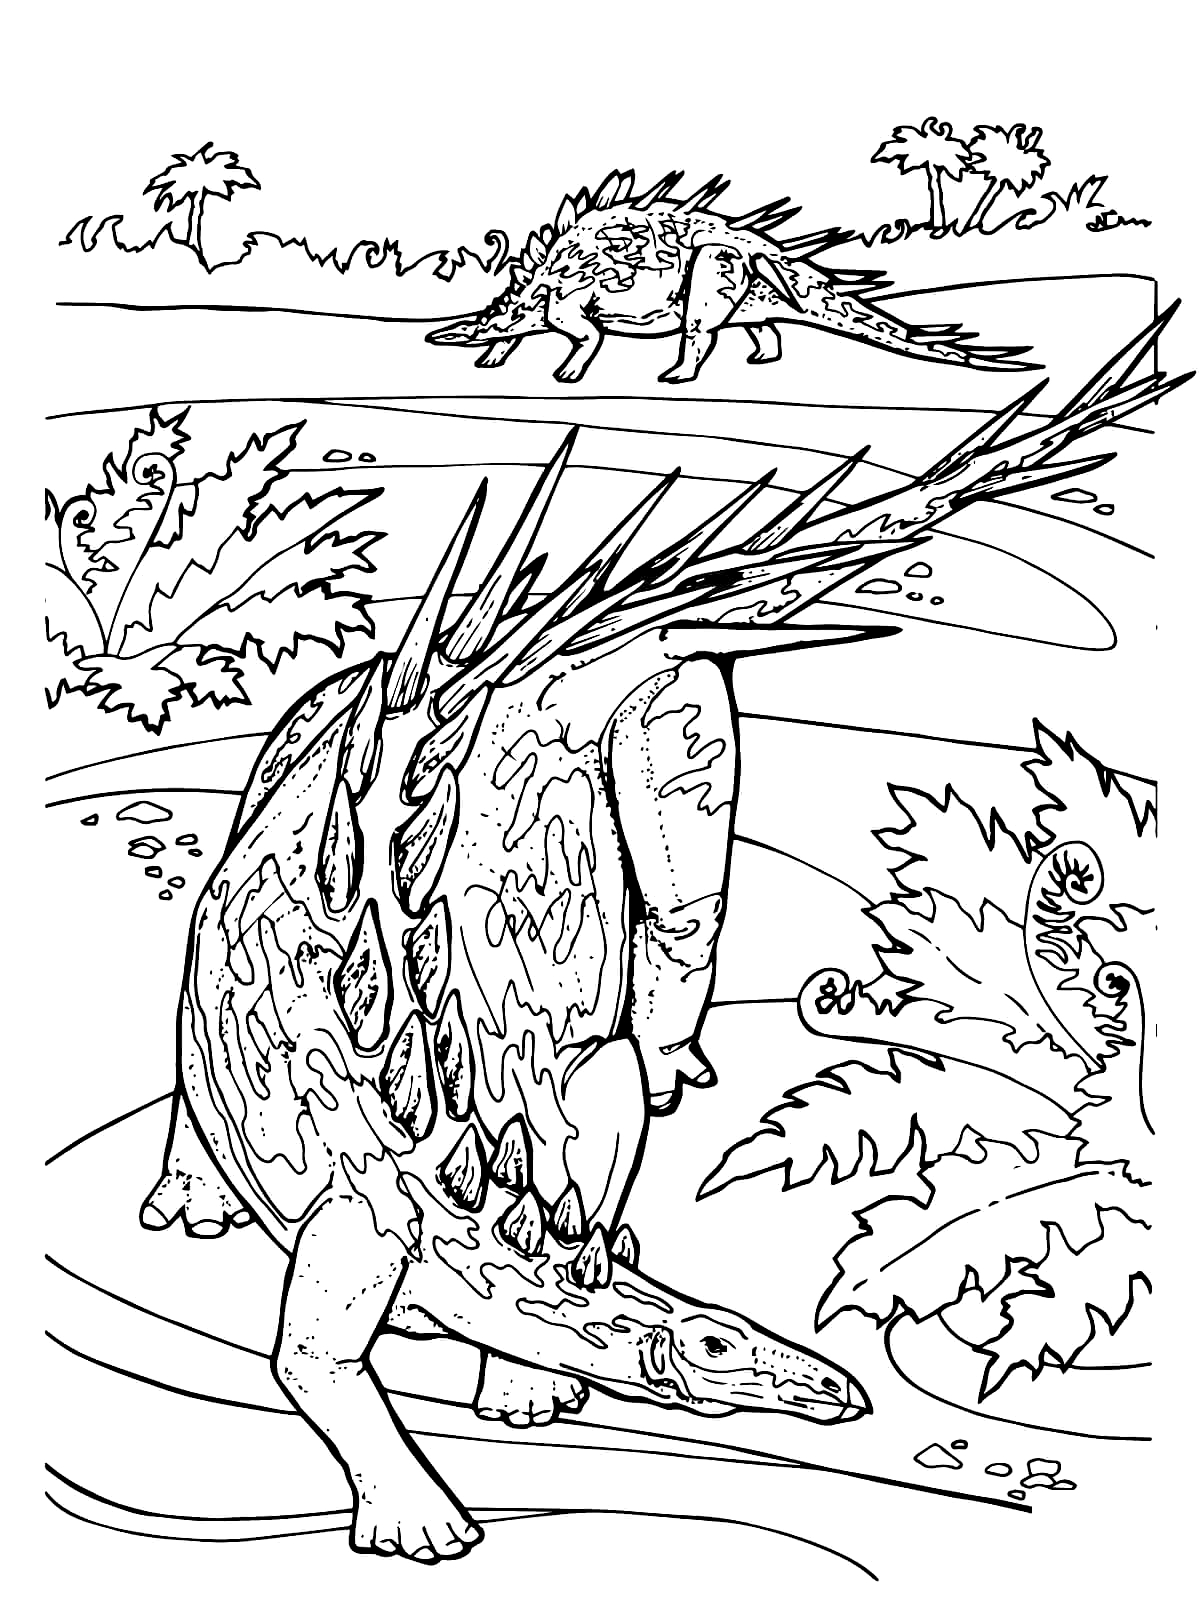 Disegno Jurassic World 05 di Jurassic World da stampare e colorare